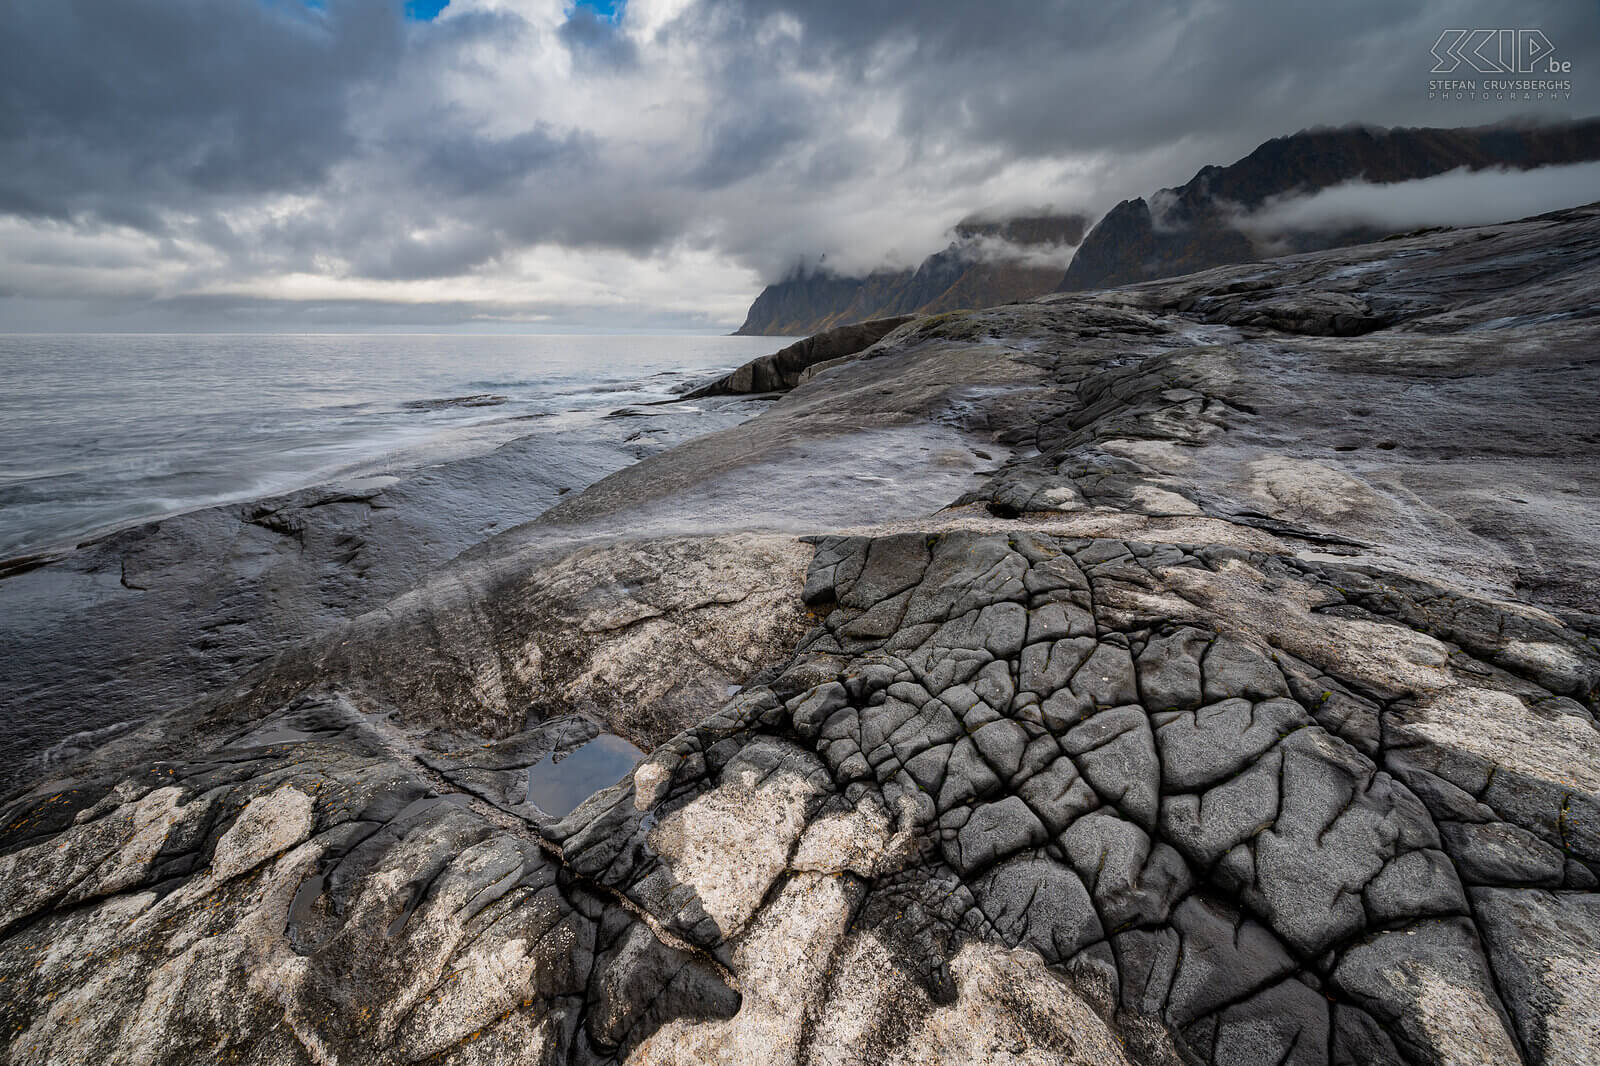 Norway - Senja - Tungeneset Selfie at a pond on Tungeneset's rocky coastline Stefan Cruysberghs